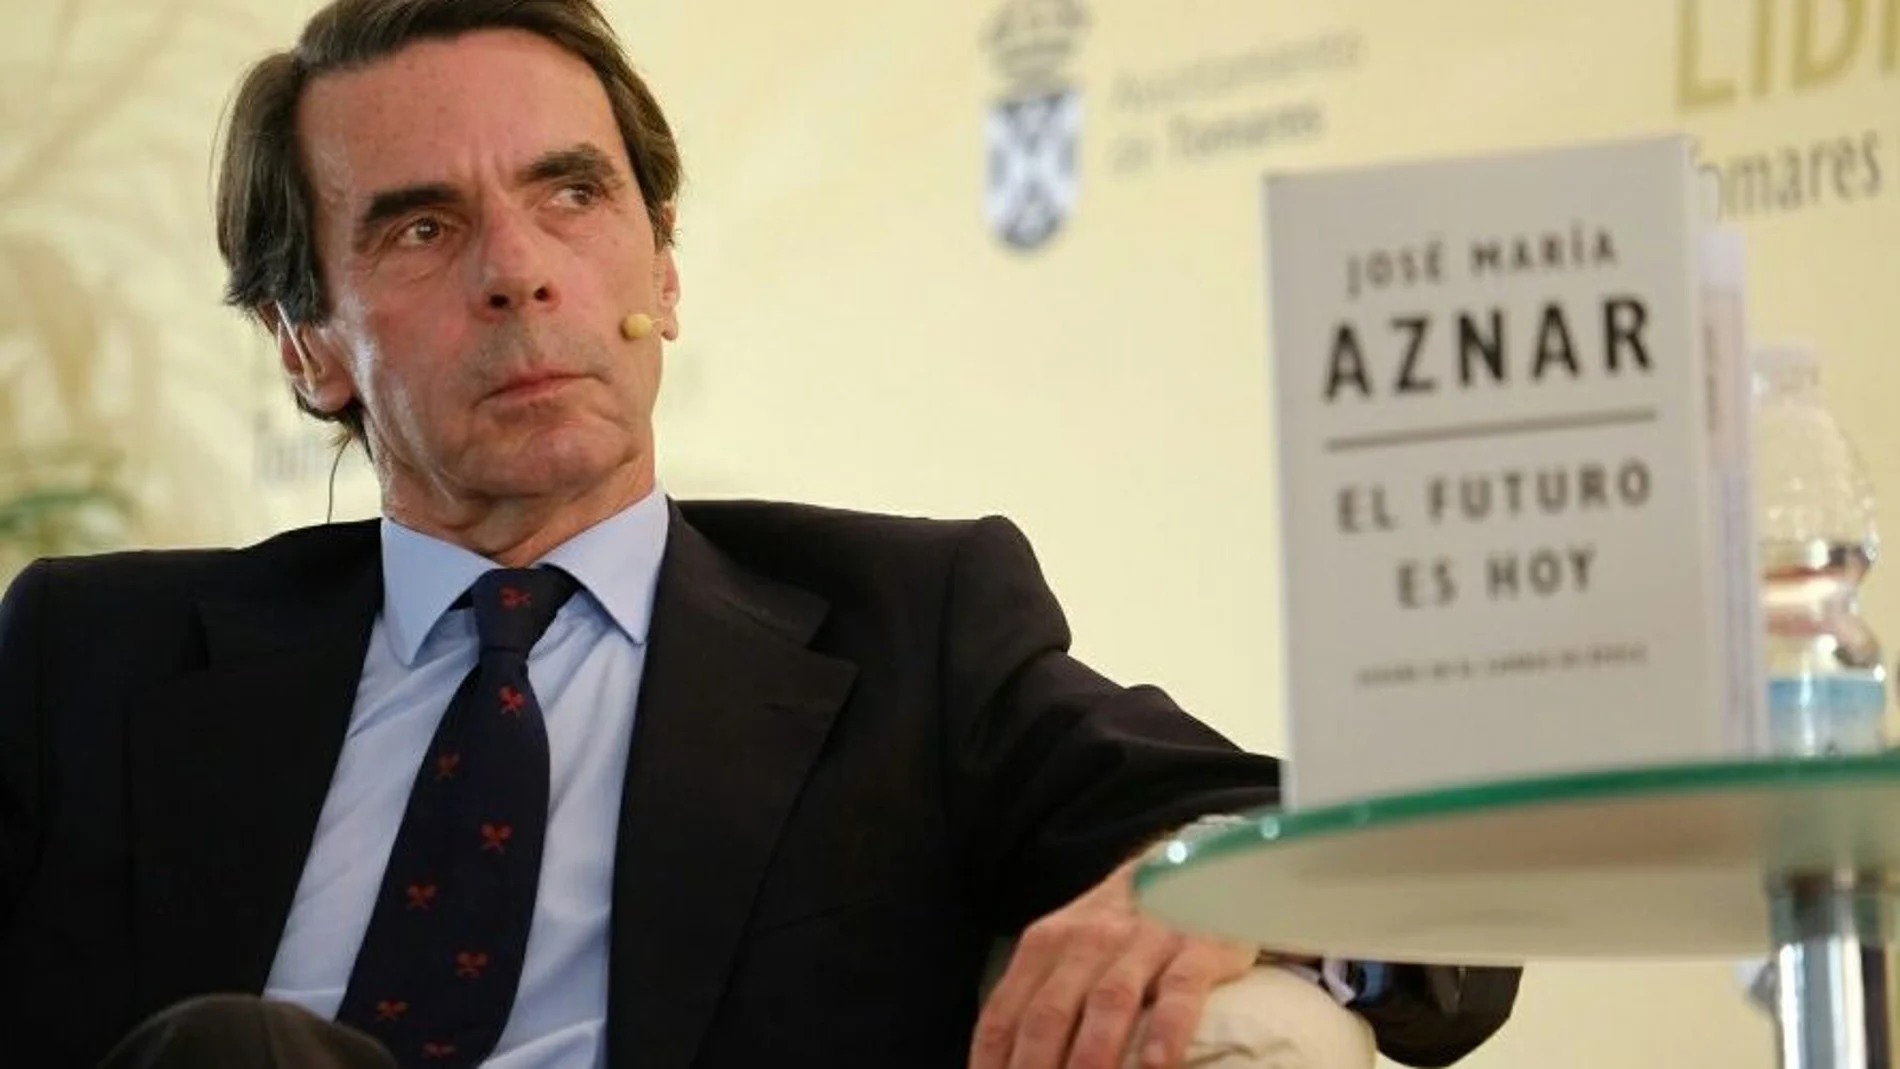 El ex presidente José María Aznar presentó en la Feria del Libro de Tomares su título “El futuro es hoy” /Foto: K-Imagen